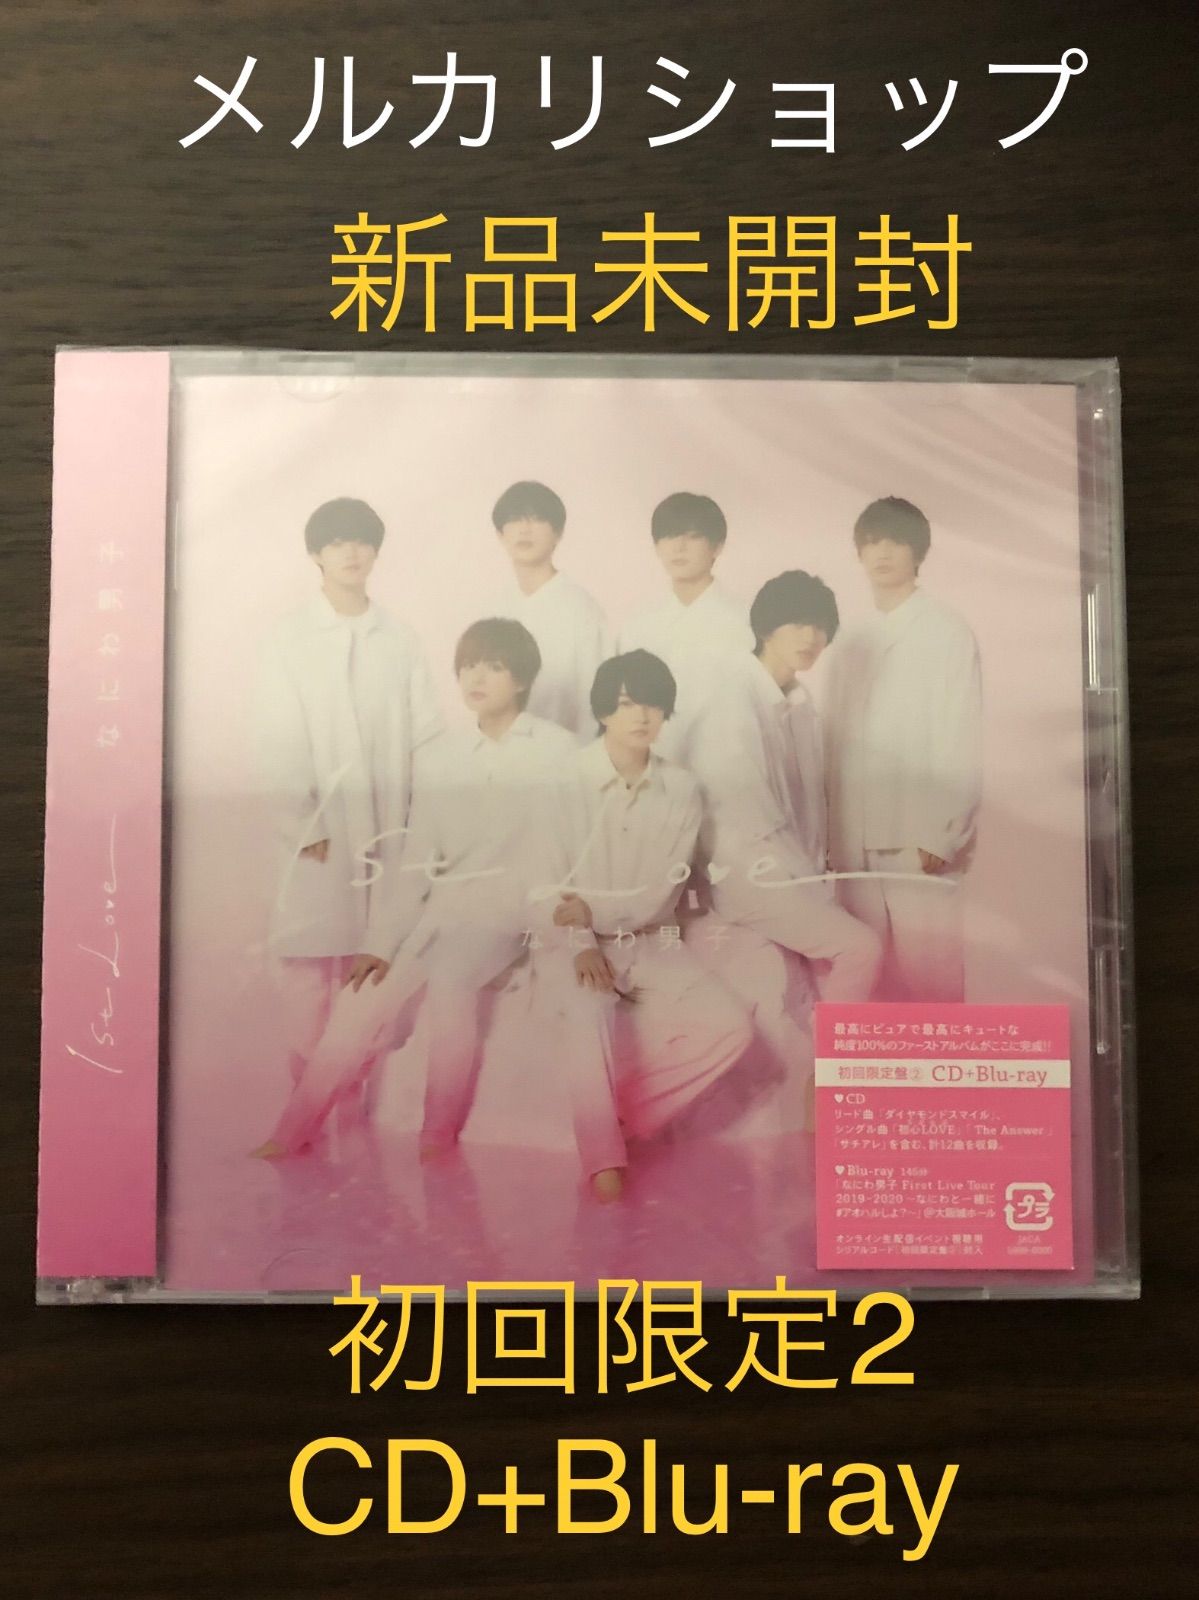 【新品】なにわ男子 1st LOVE Blu-ray 初回限定盤1.2セットCD